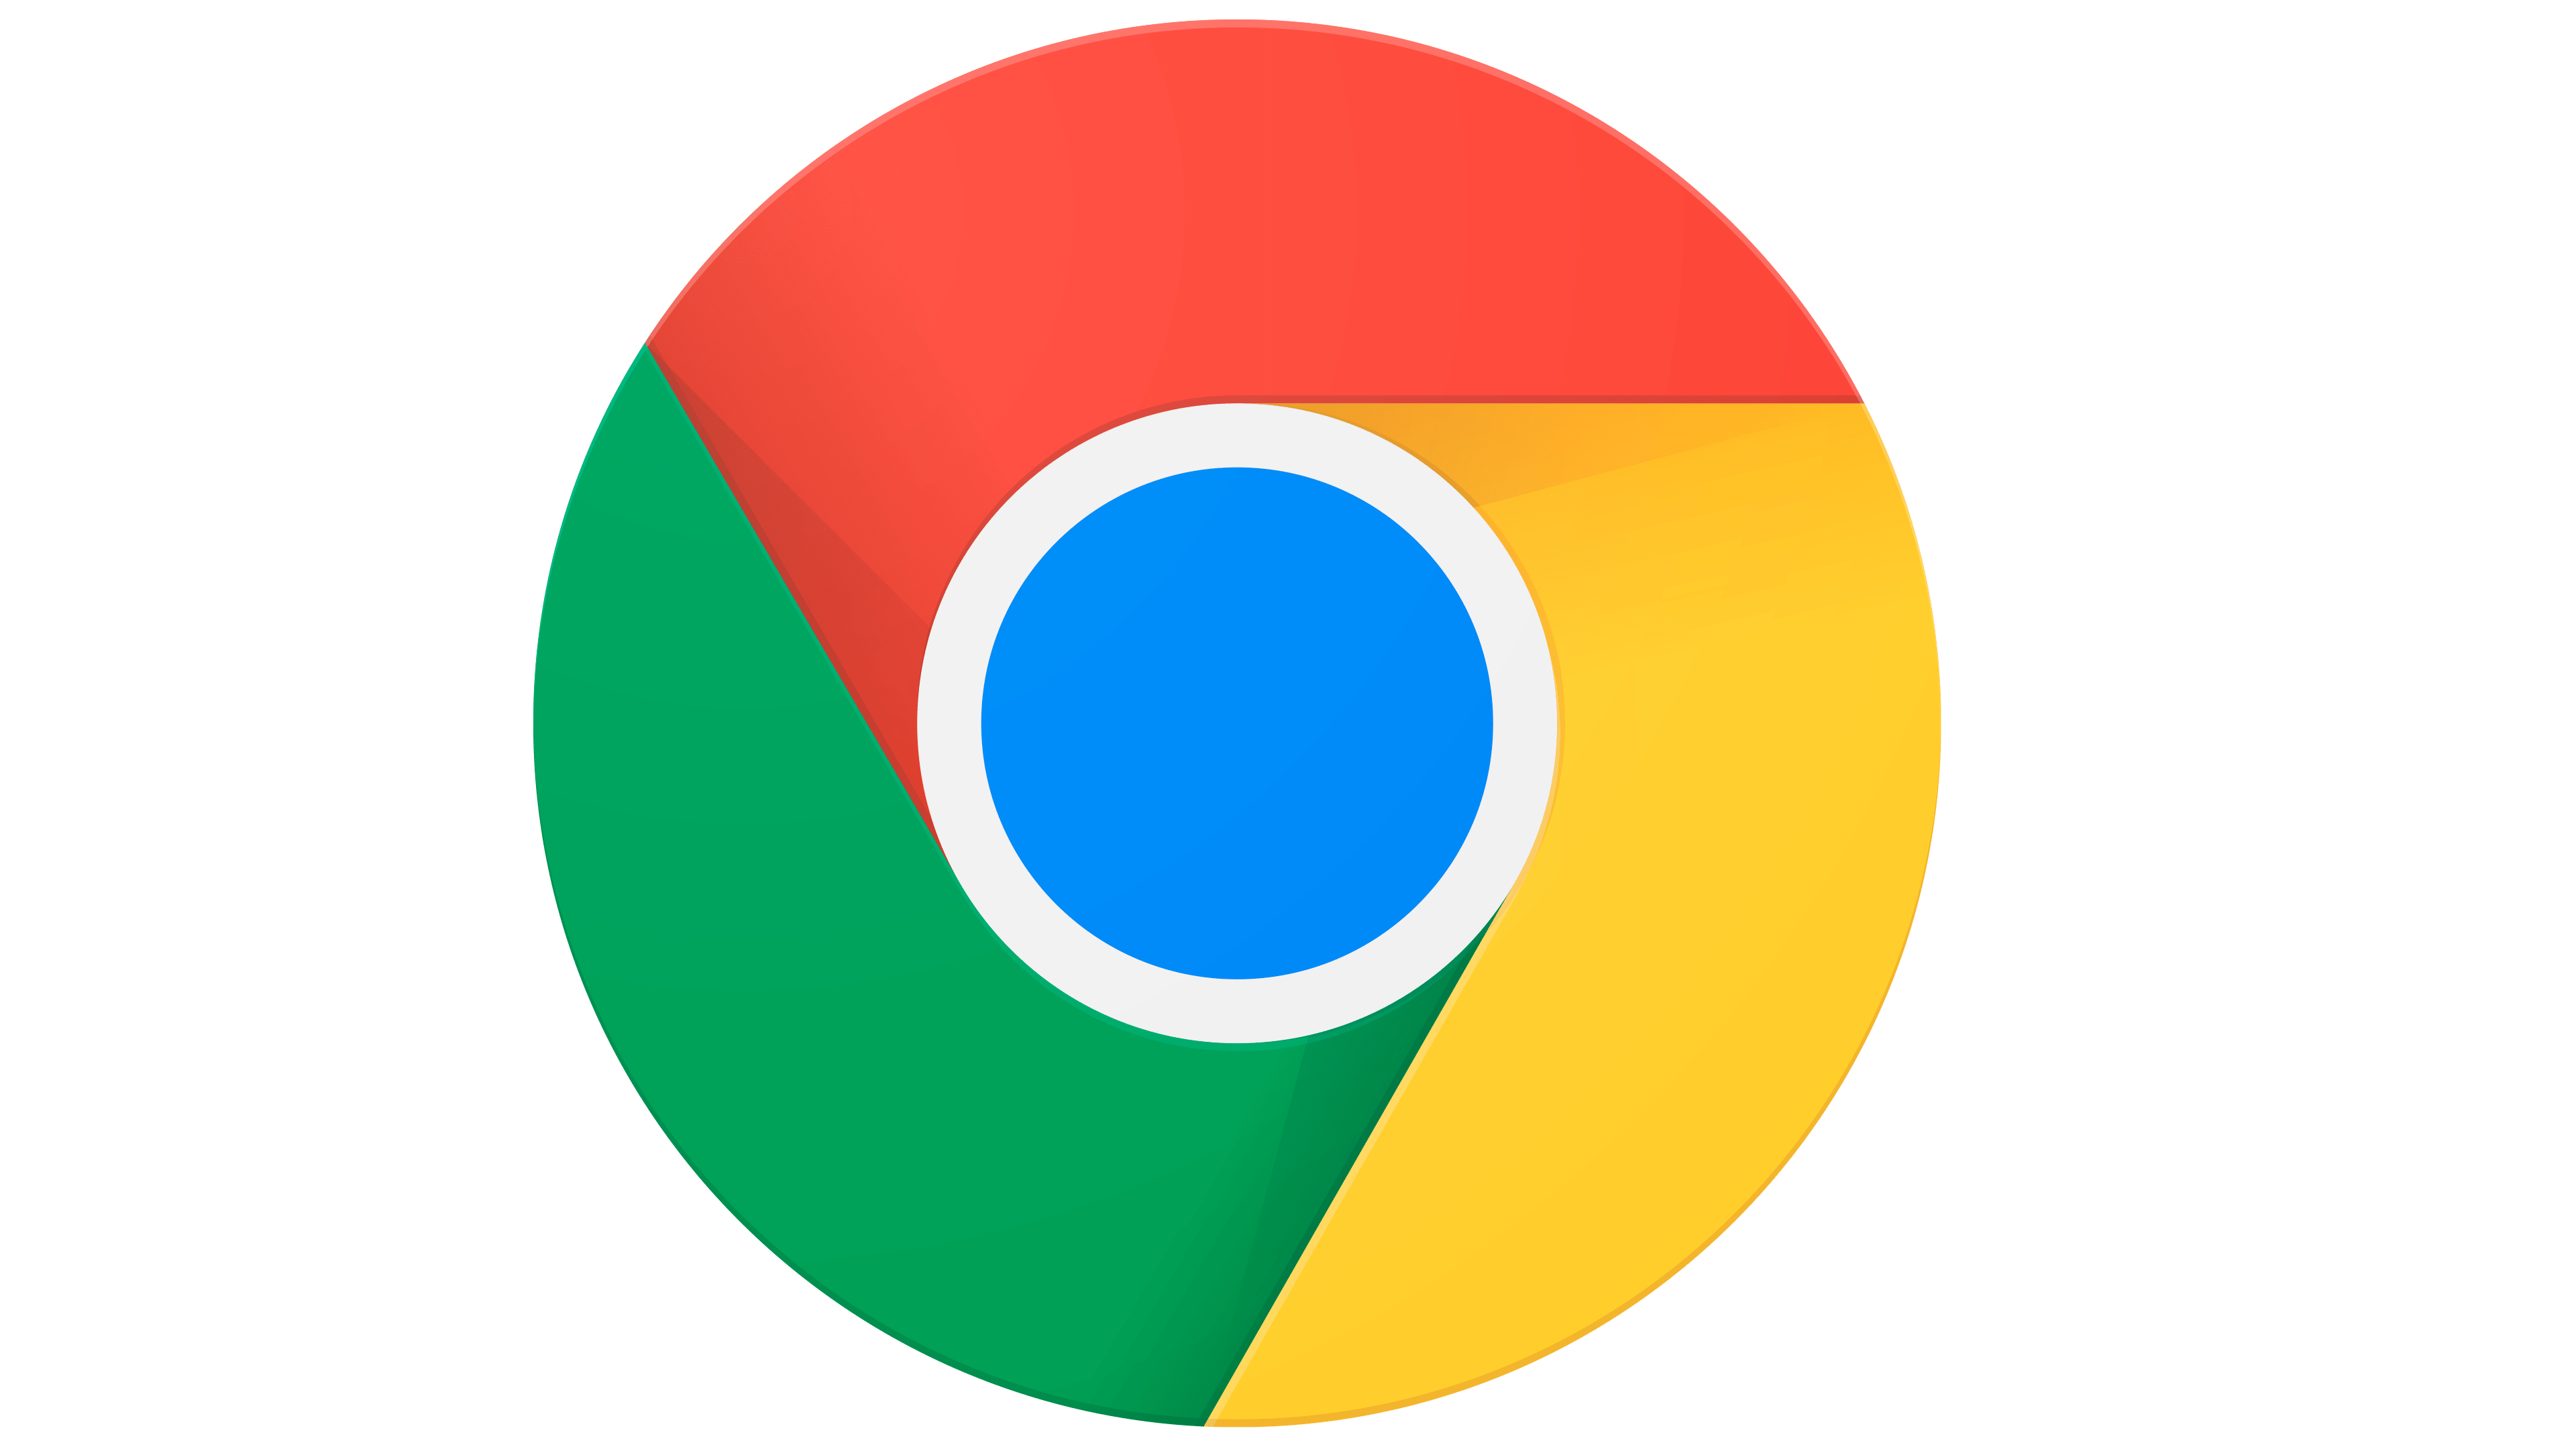 更新至 Chrome 浏览器 V96.0.4664.45 正式版 Chrome 首次启用后向缓存功能 | 從零開始